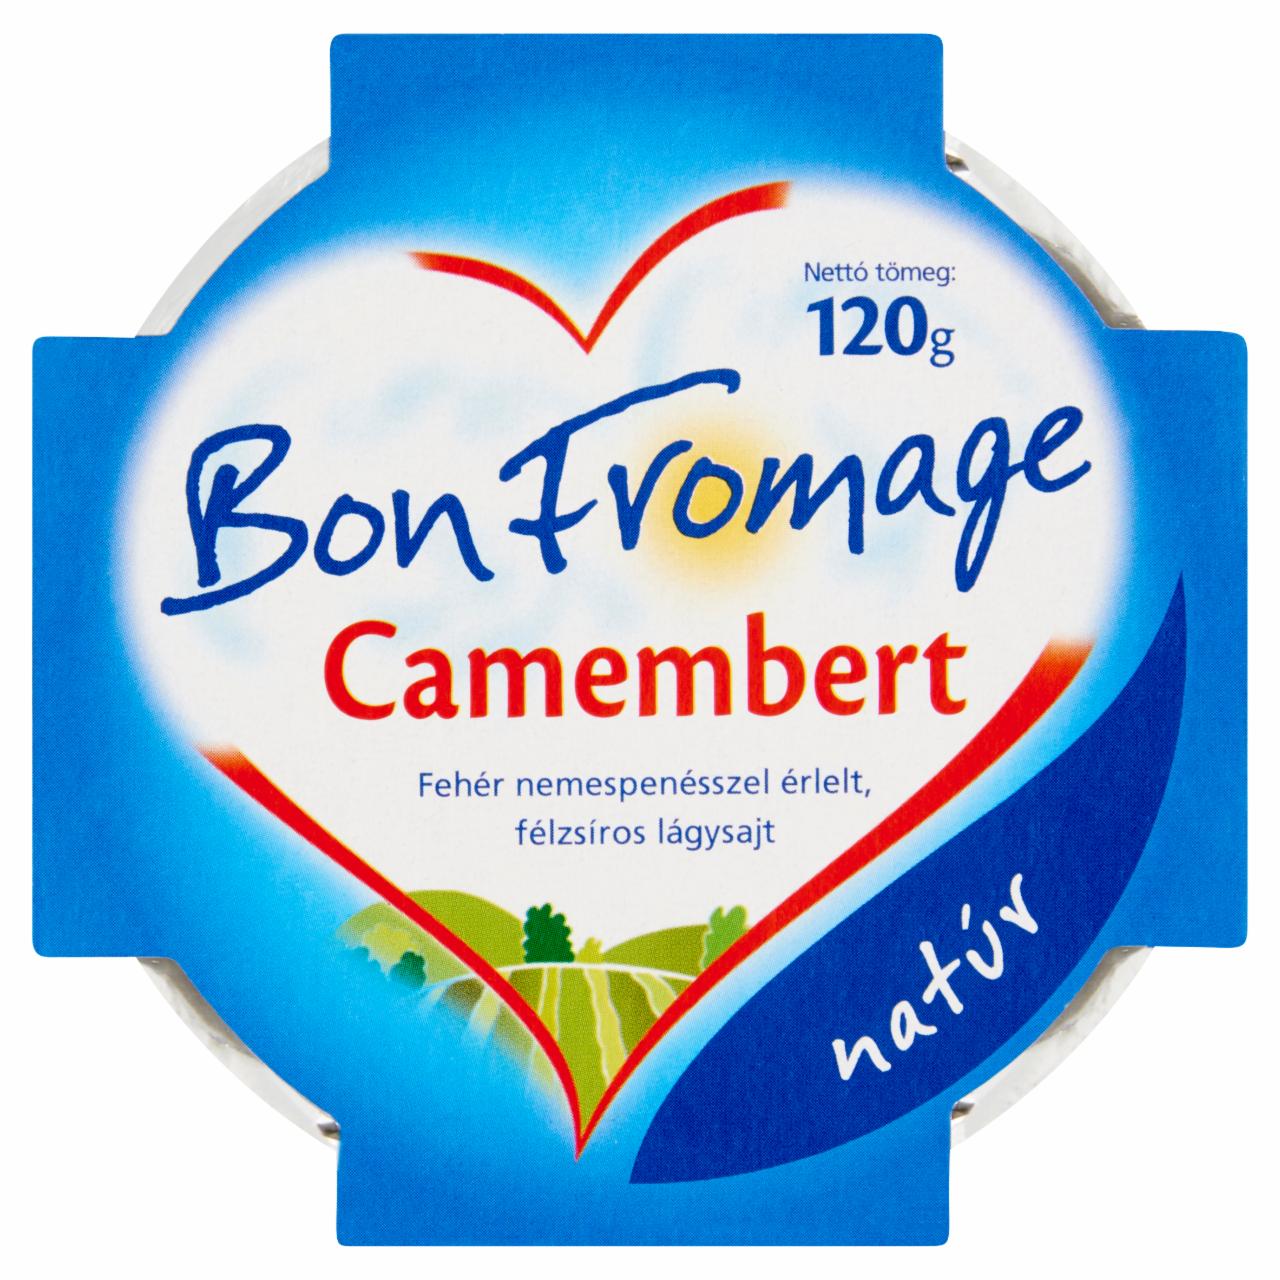 Képek - Bon Fromage Camembert natúr, fehér nemespenésszel érlelt, félzsíros lágysajt 120 g